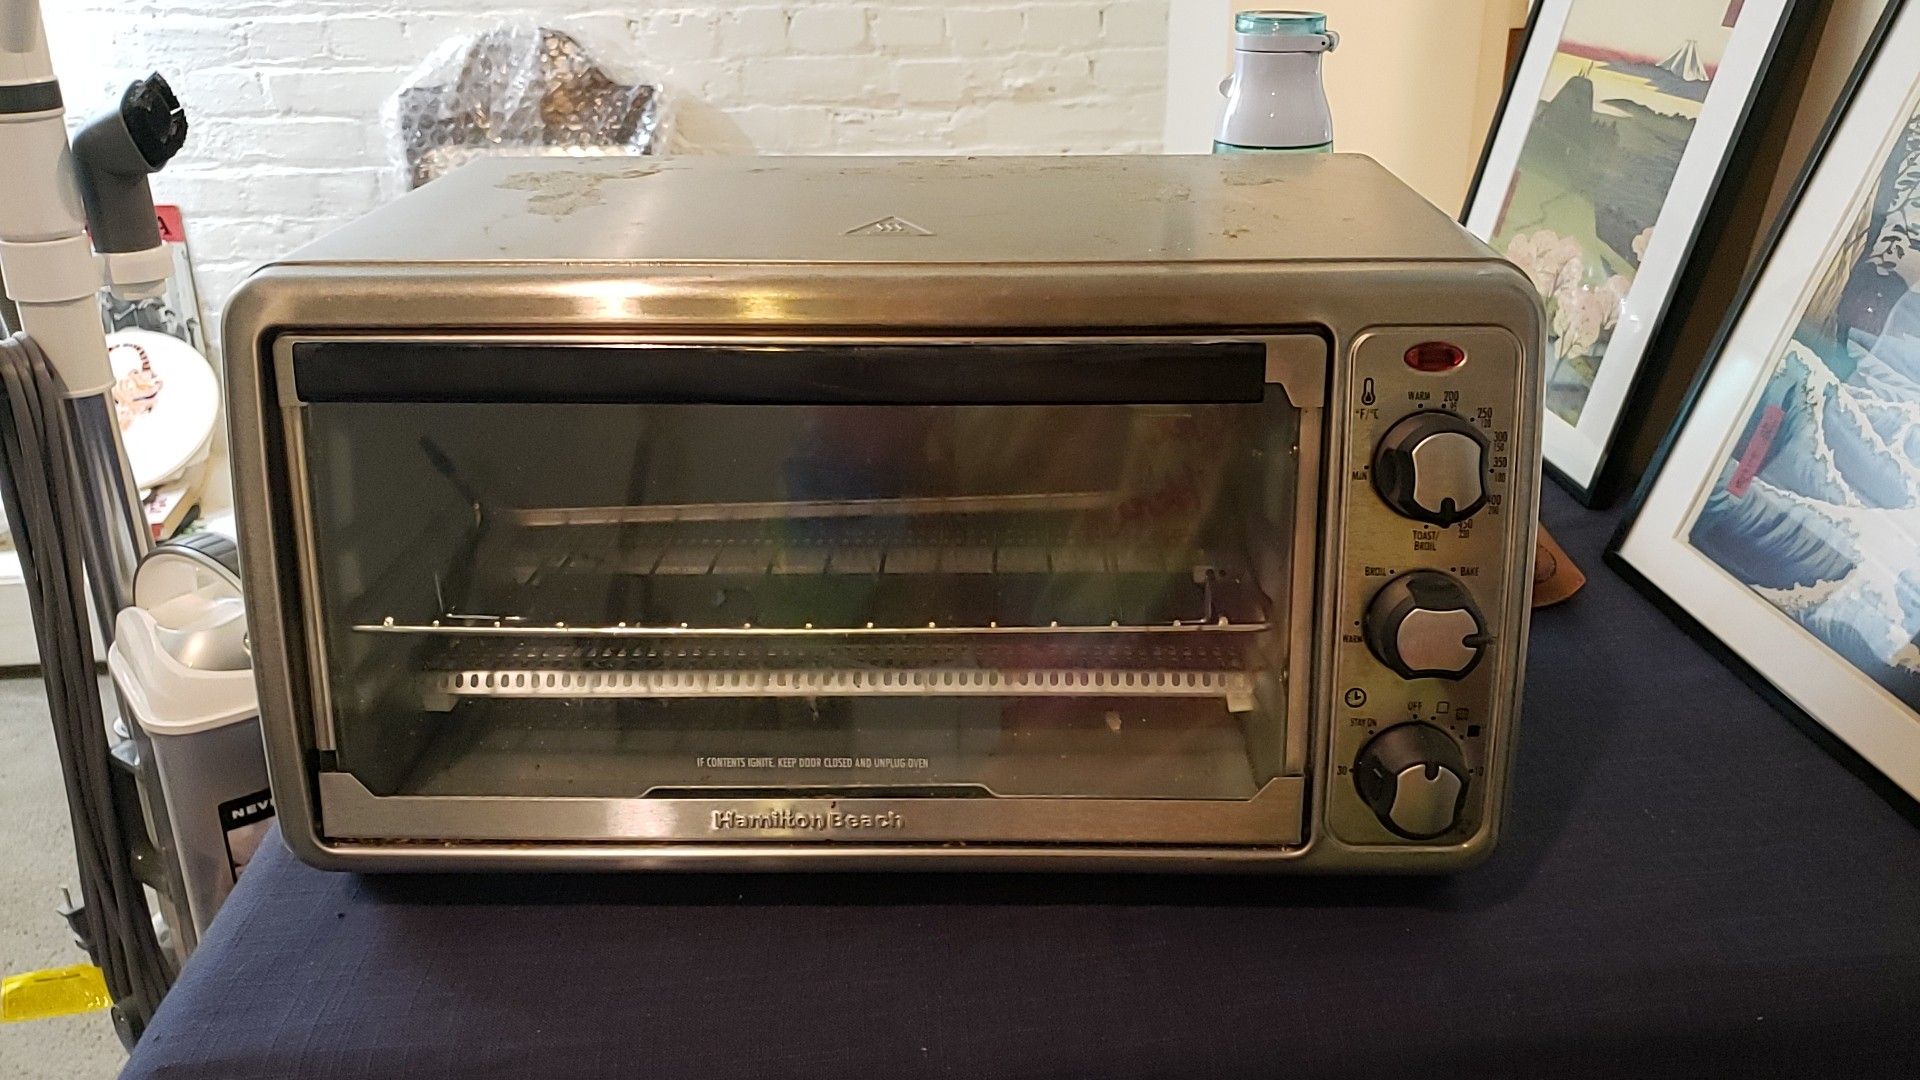 Toaster oven - Hamilton Beach